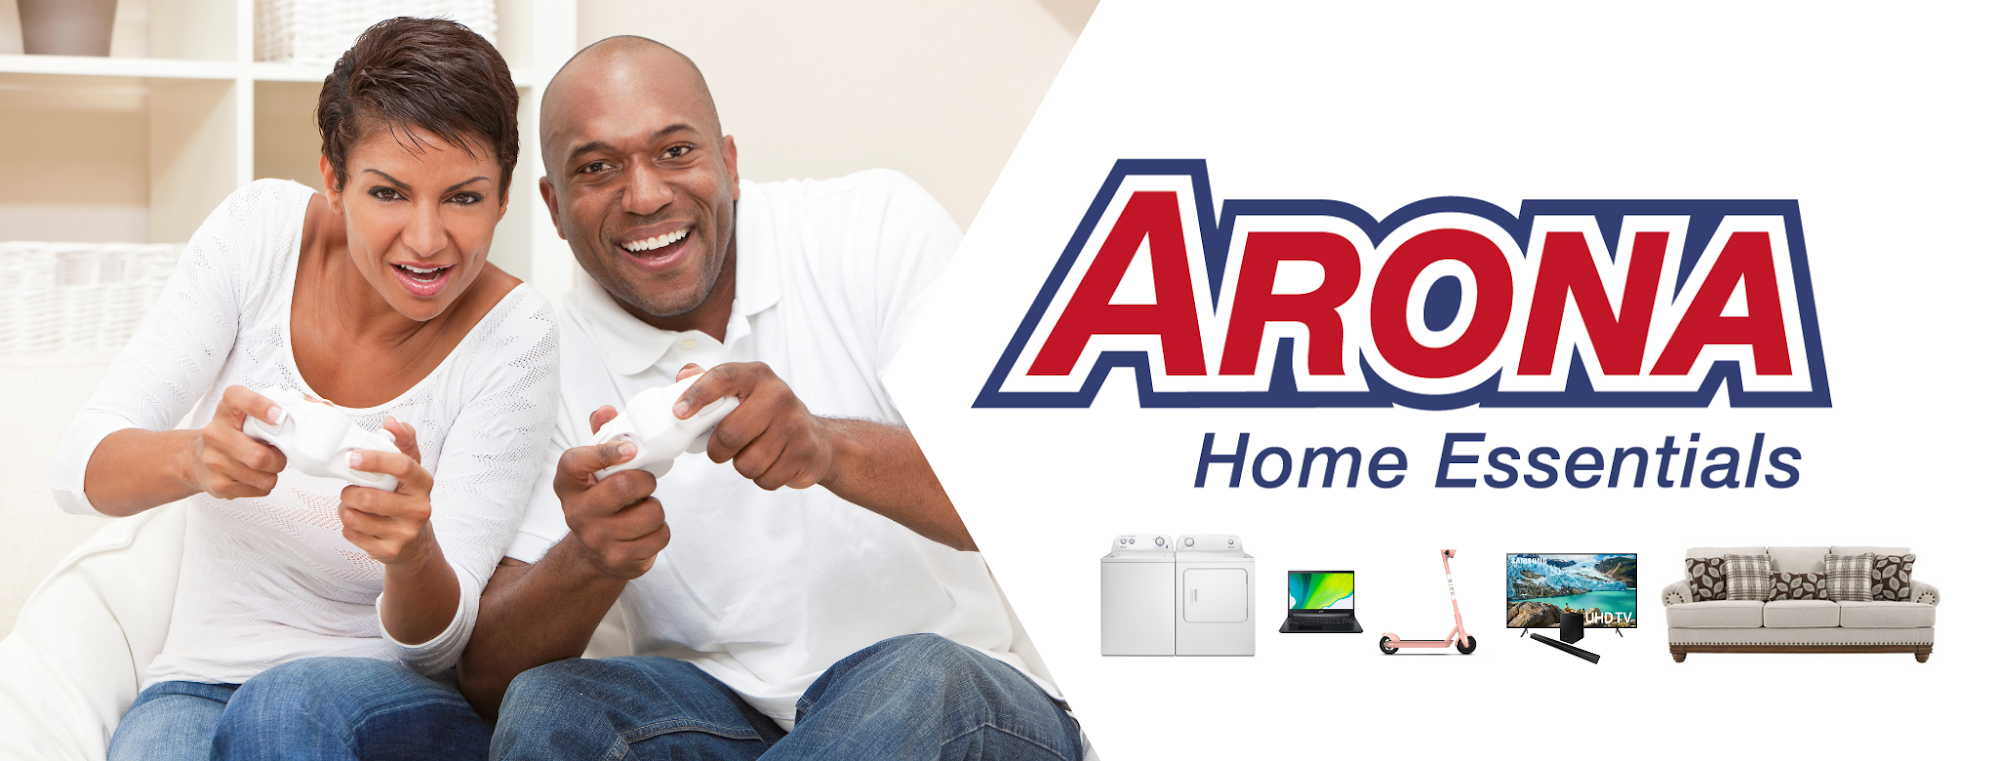 Arona Home Essentials Burlington